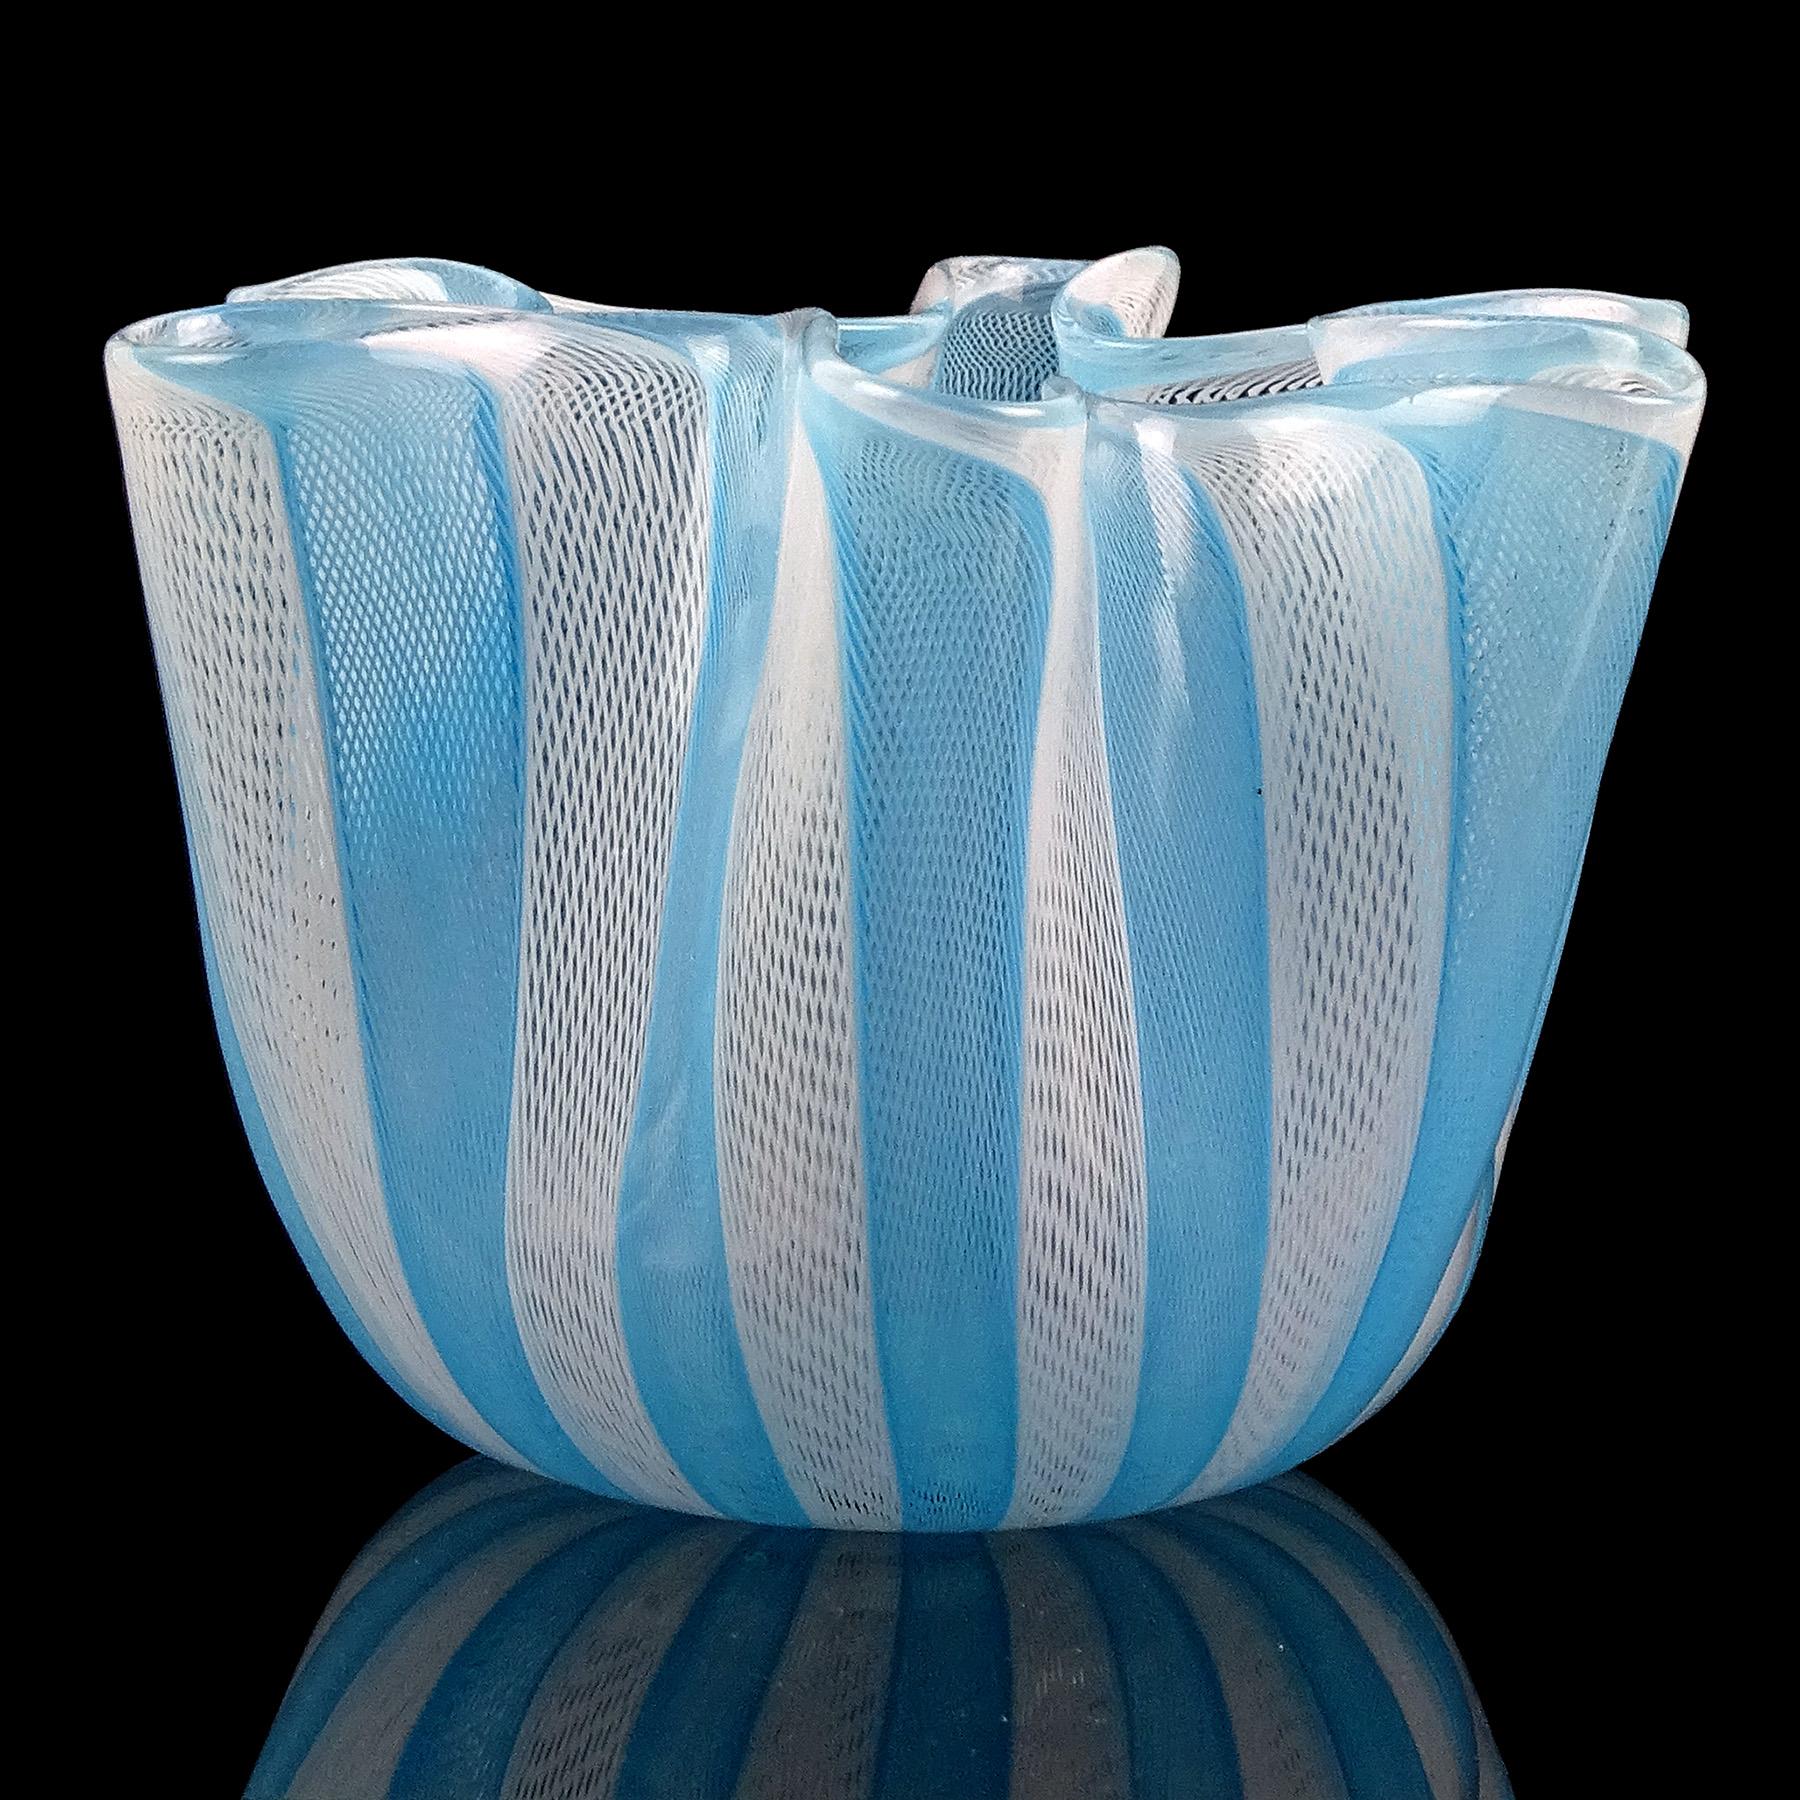 Vintage Murano soufflé à la main bleu ciel, avec des rubans blancs verre d'art italien décoratif fazzoletto / vase à mouchoirs. Attribué au designer Fulvio Bianconi et à Paolo Venini pour la société Venini, vers les années 1960. Il porte également